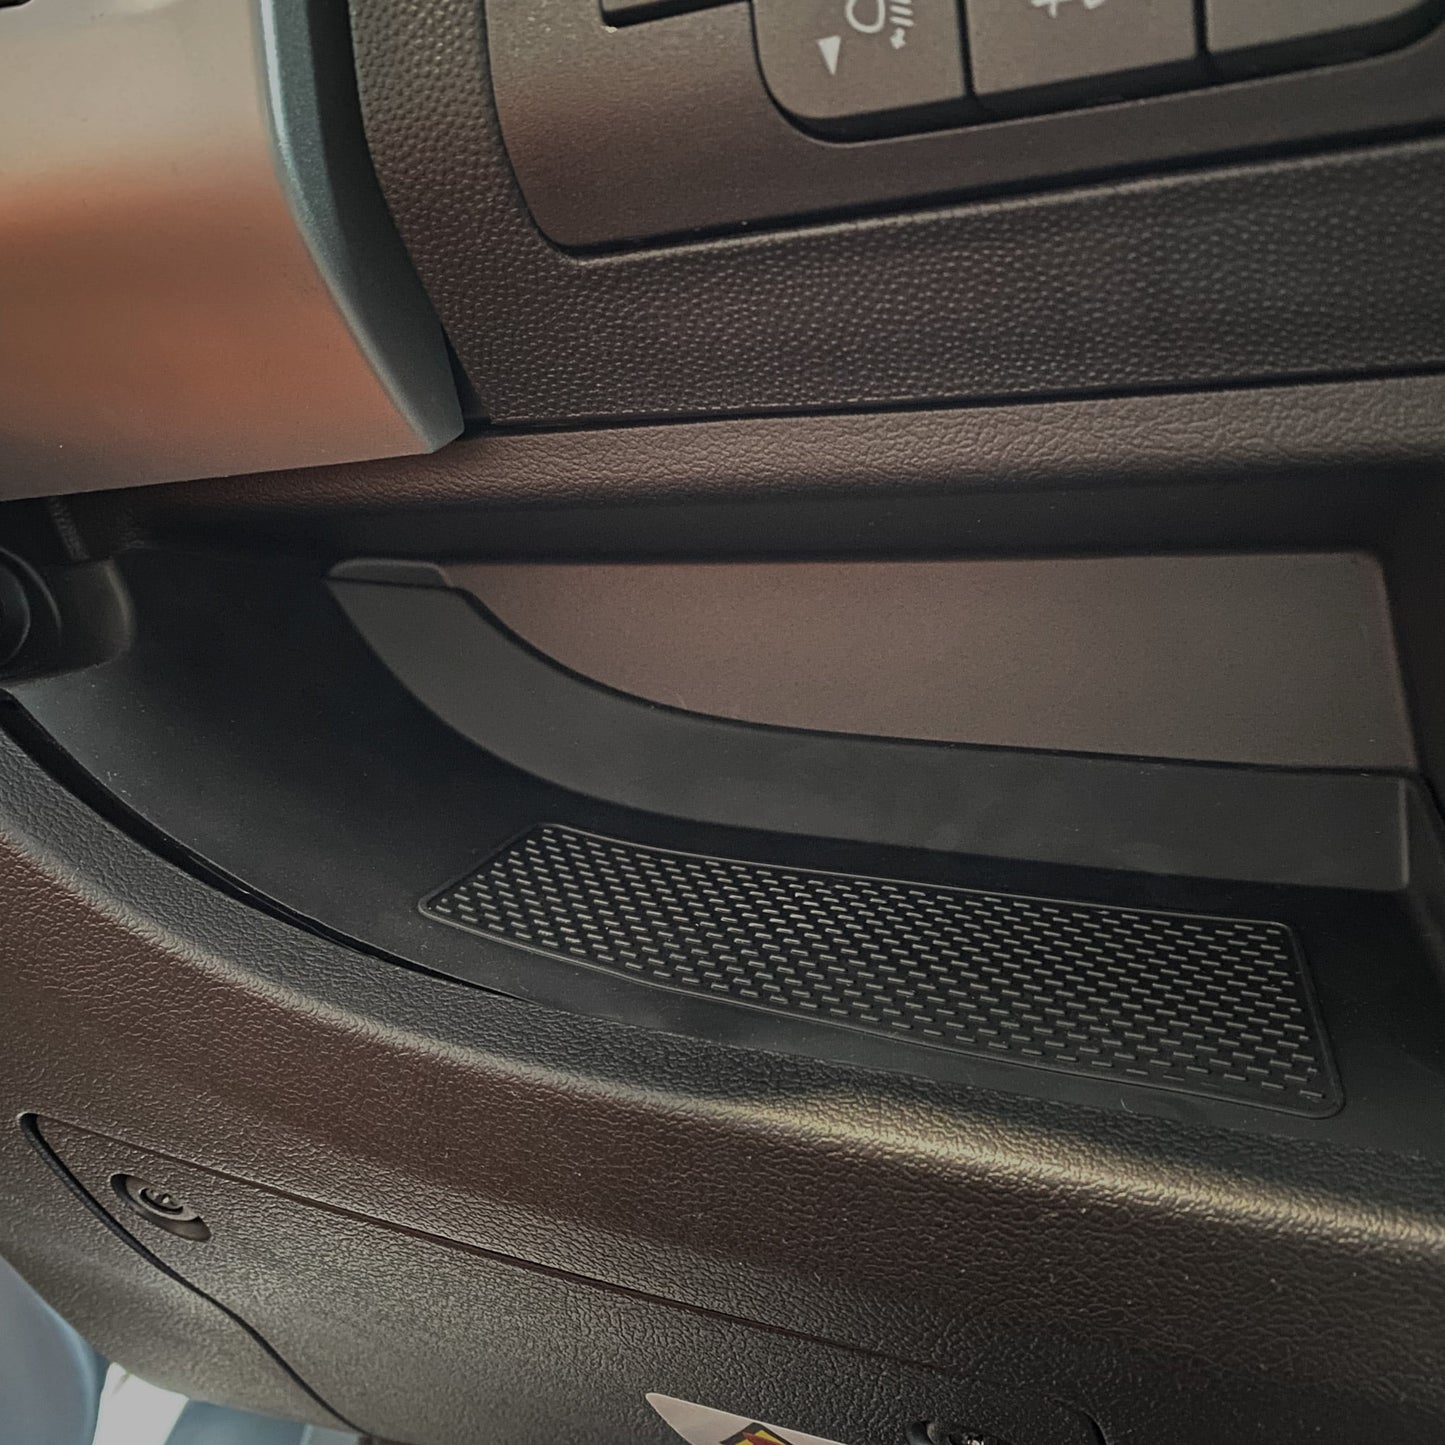 Insertos/Alfombrillas de Goma Negra para el Panel Inferior del Tablero de Fiat Ducato LHD (Conducción a la Izquierda)